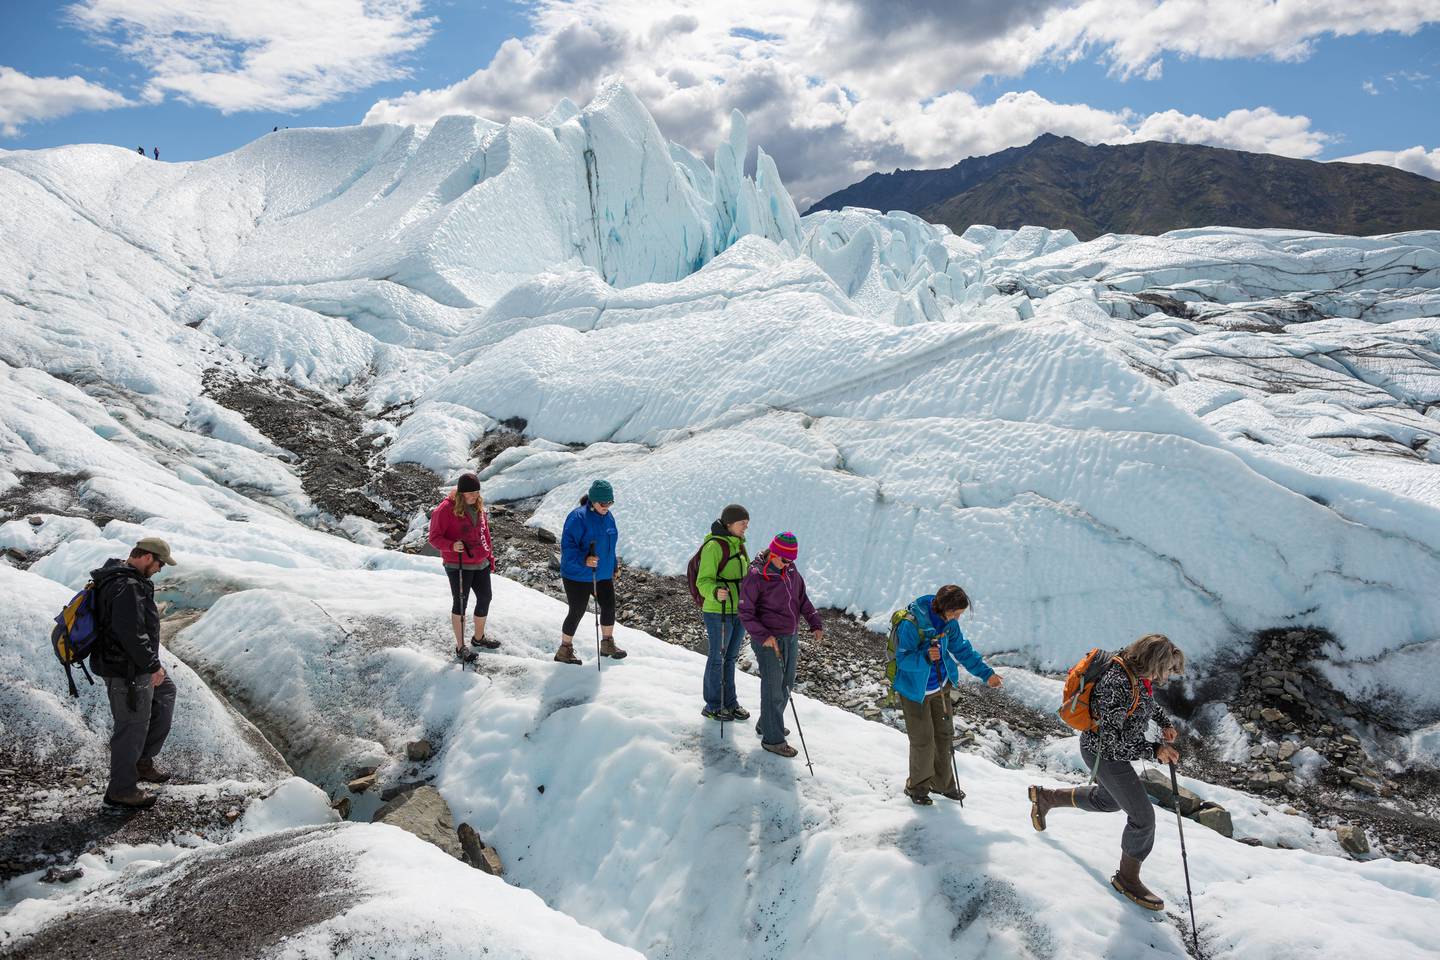 matanuska glacier tour